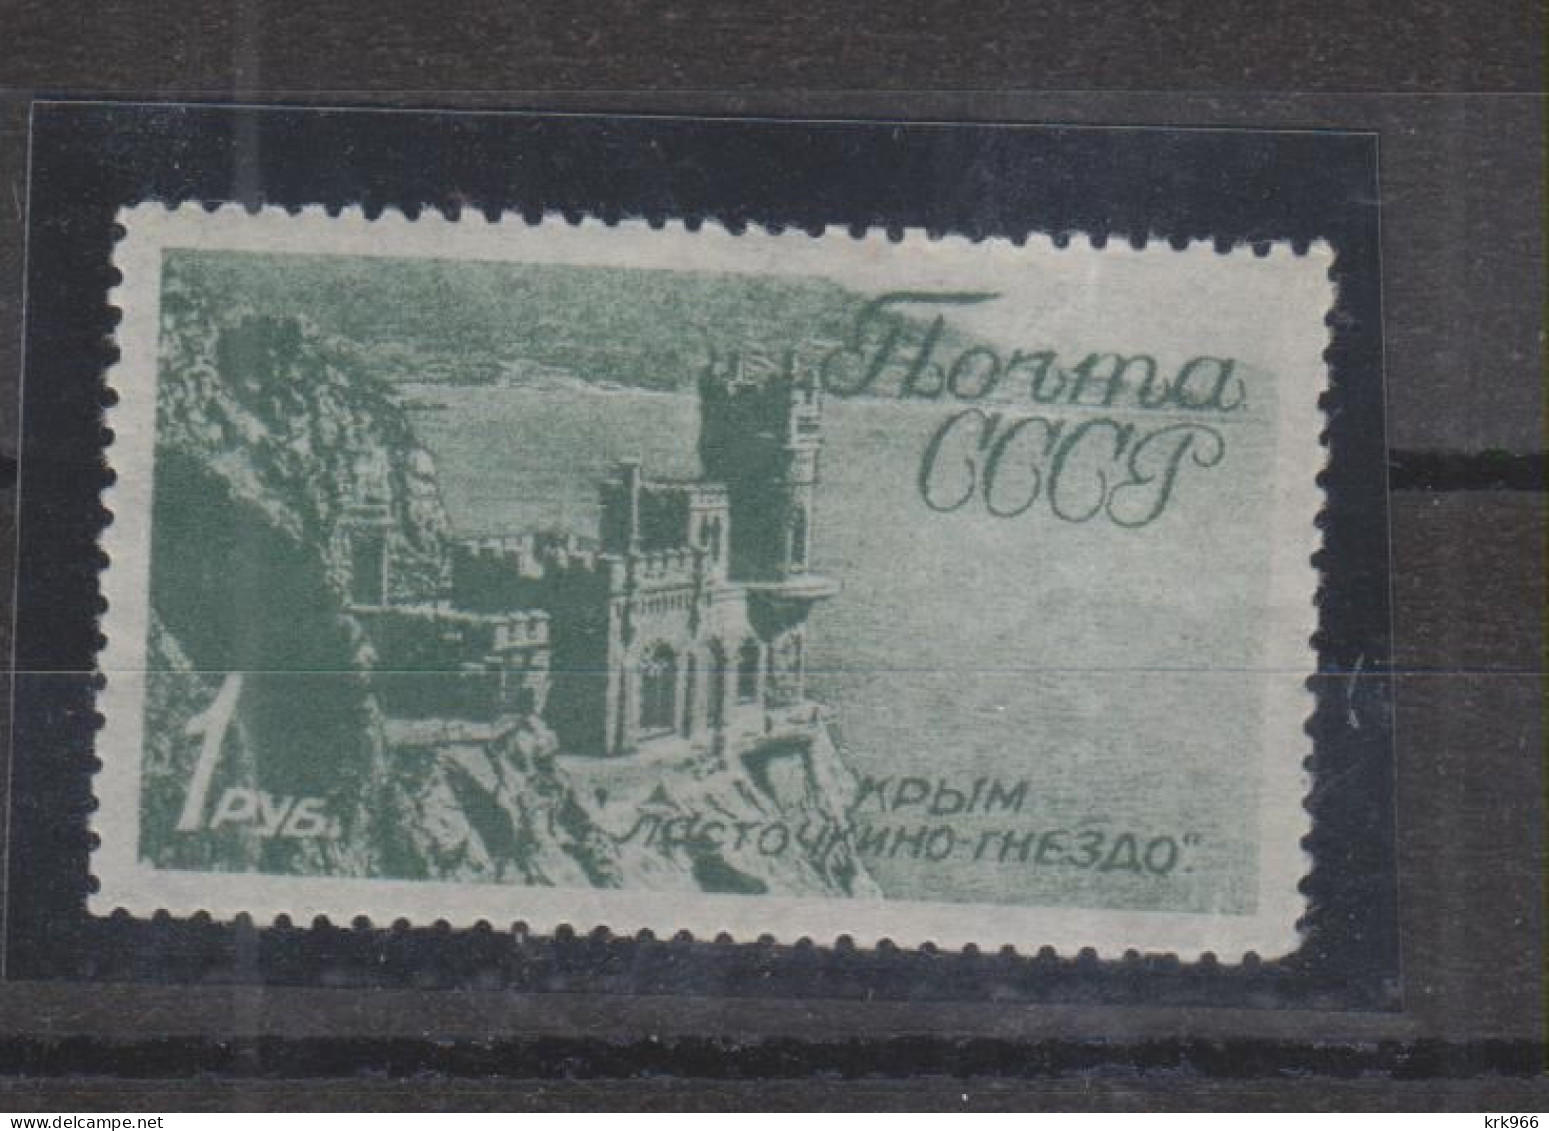 RUSSIA 1938 1 R Nice Stamp   MNH - Ongebruikt